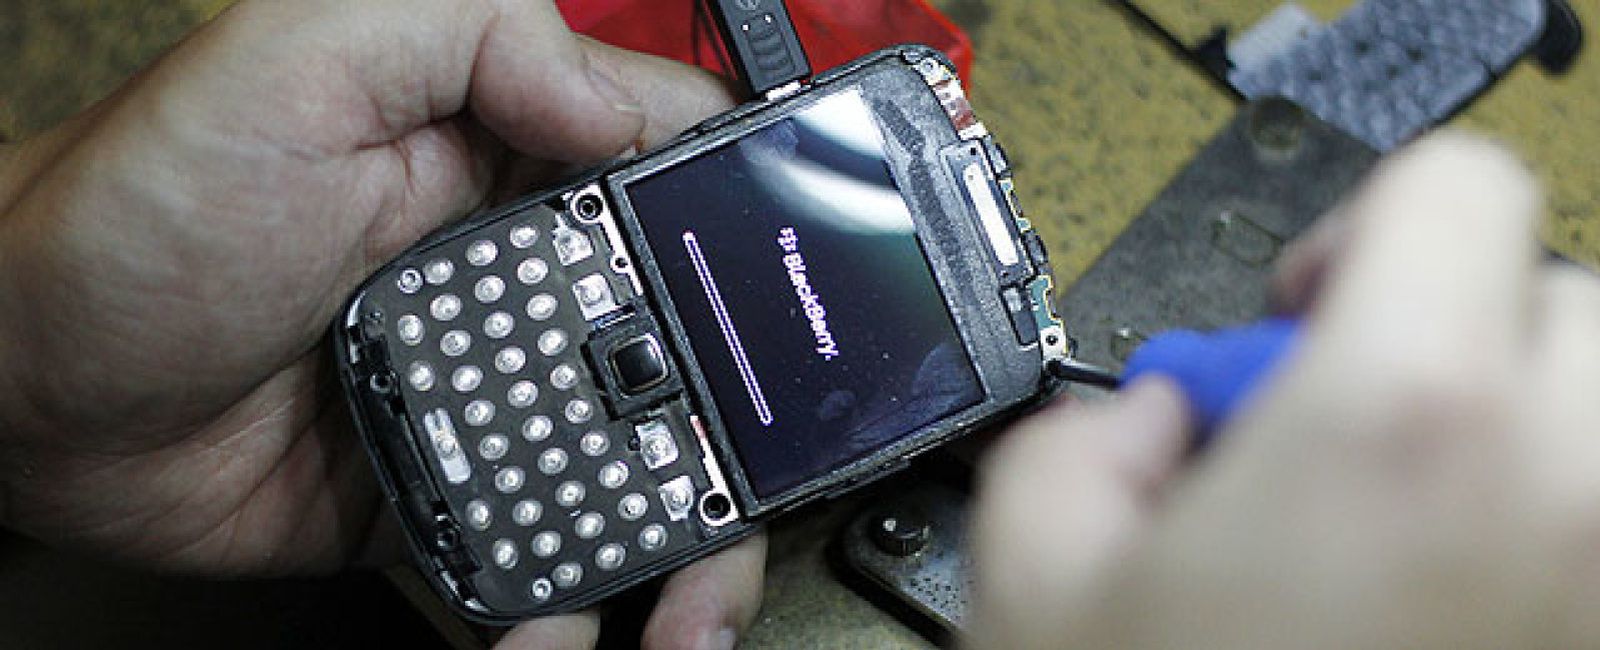 Foto: Ahora que va a vender su móvil, ¿le consta que sus datos están a salvo?